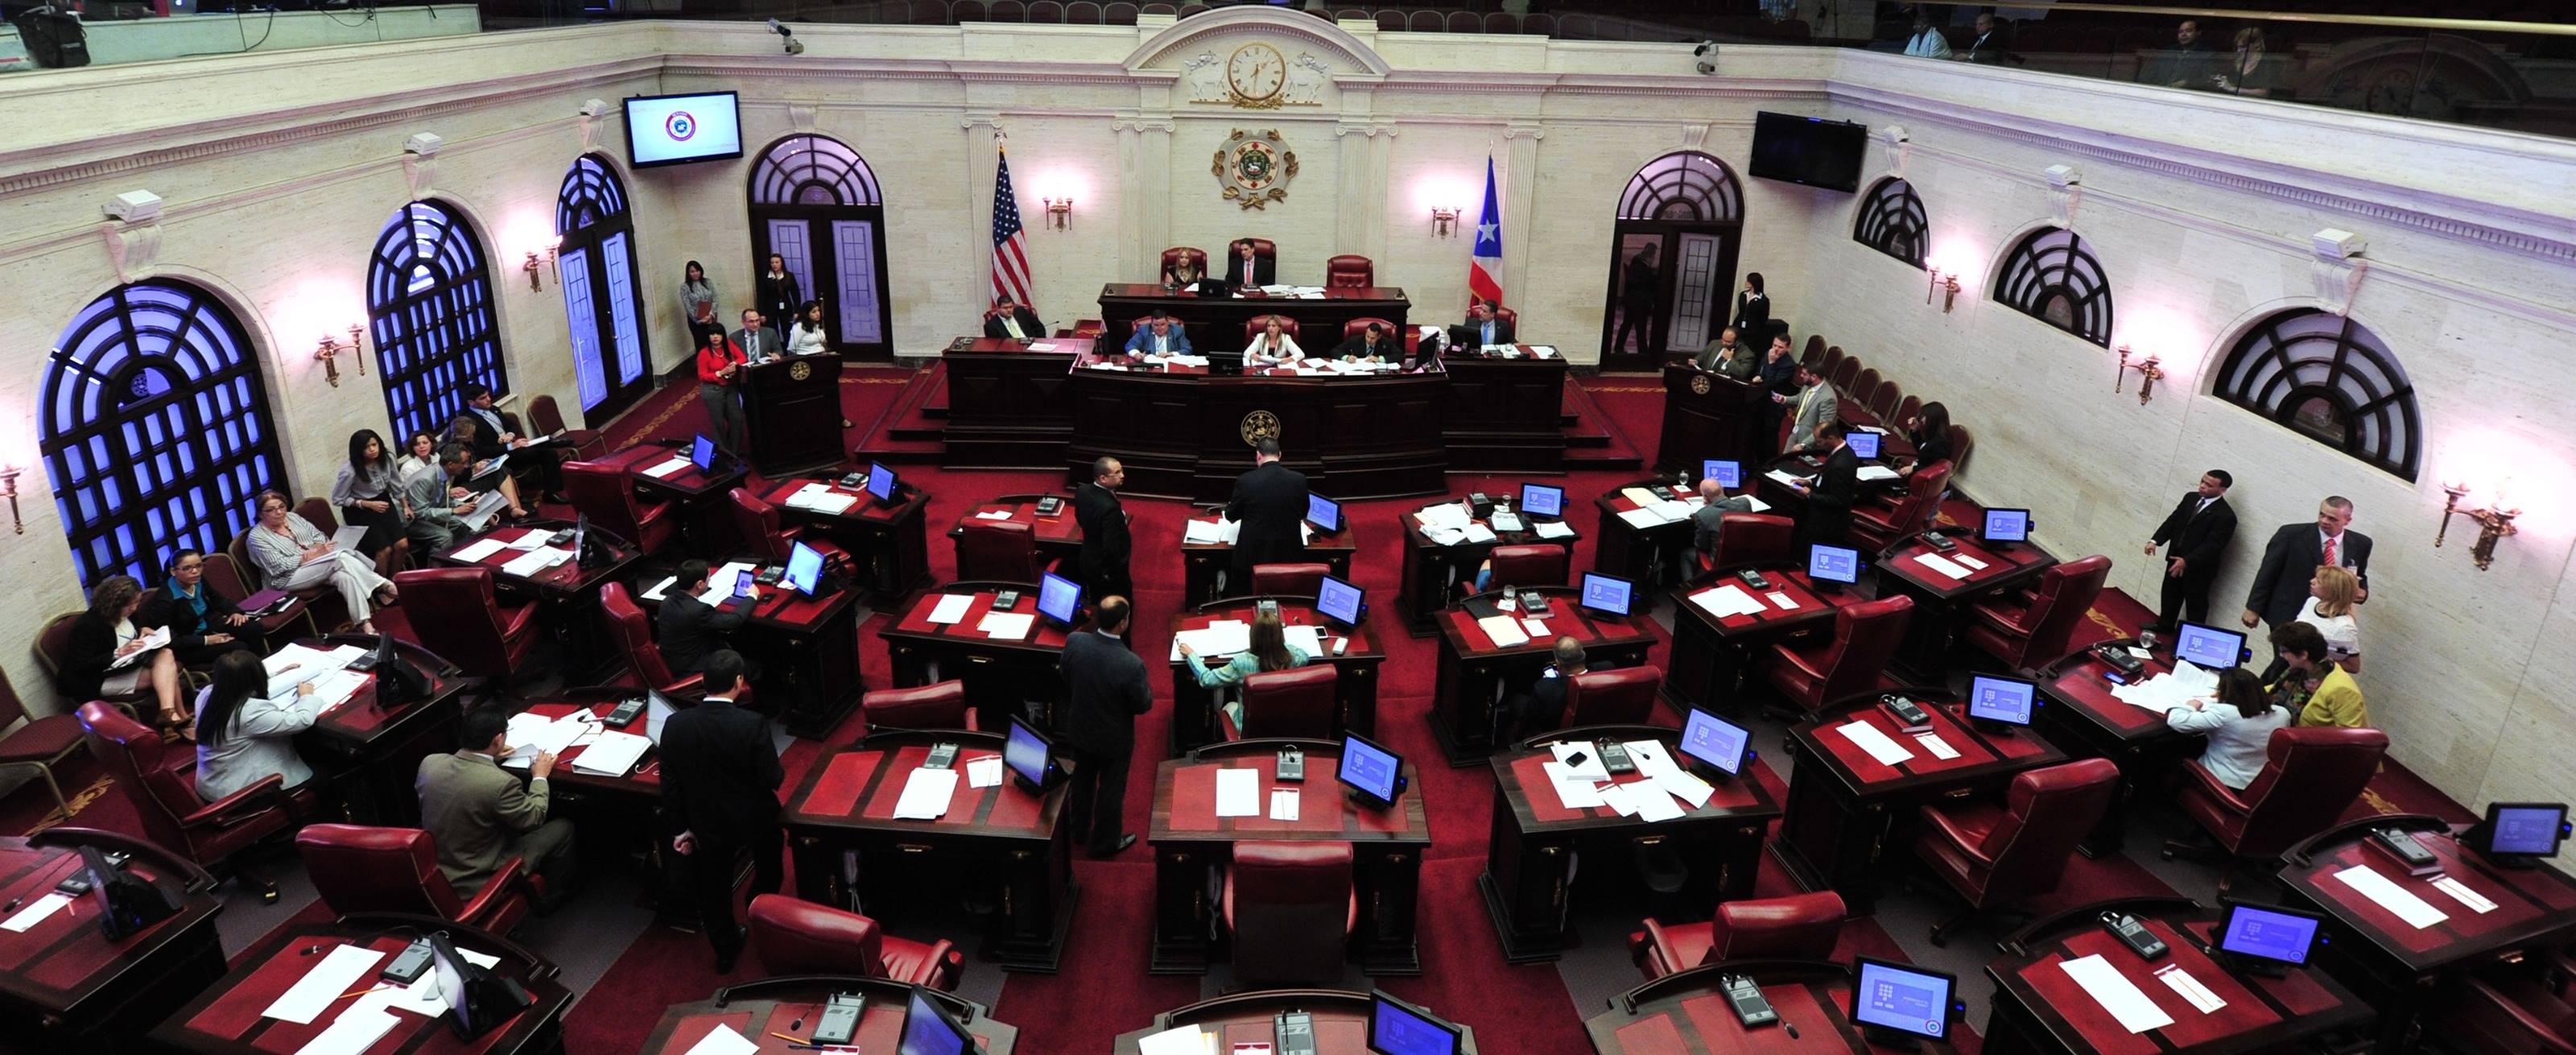 El Senado de Puerto Rico, que será presidido nuevamente por Tomás Rivera Schatz, contará por primera vez en la historia con un Senador Independiente, el Dr. José Vargas Vidot.